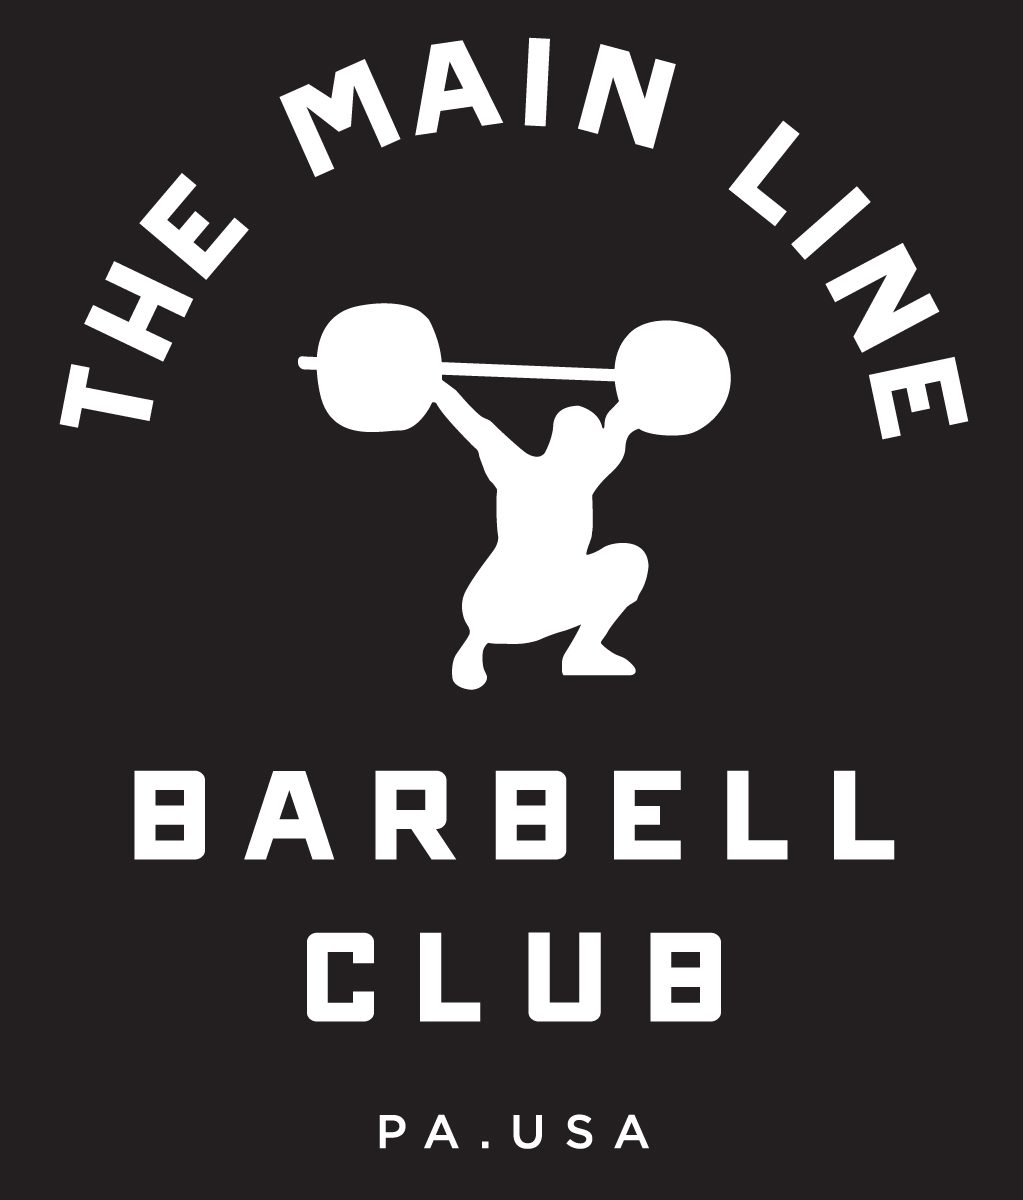 Week of 12.12.16 Barbell Club